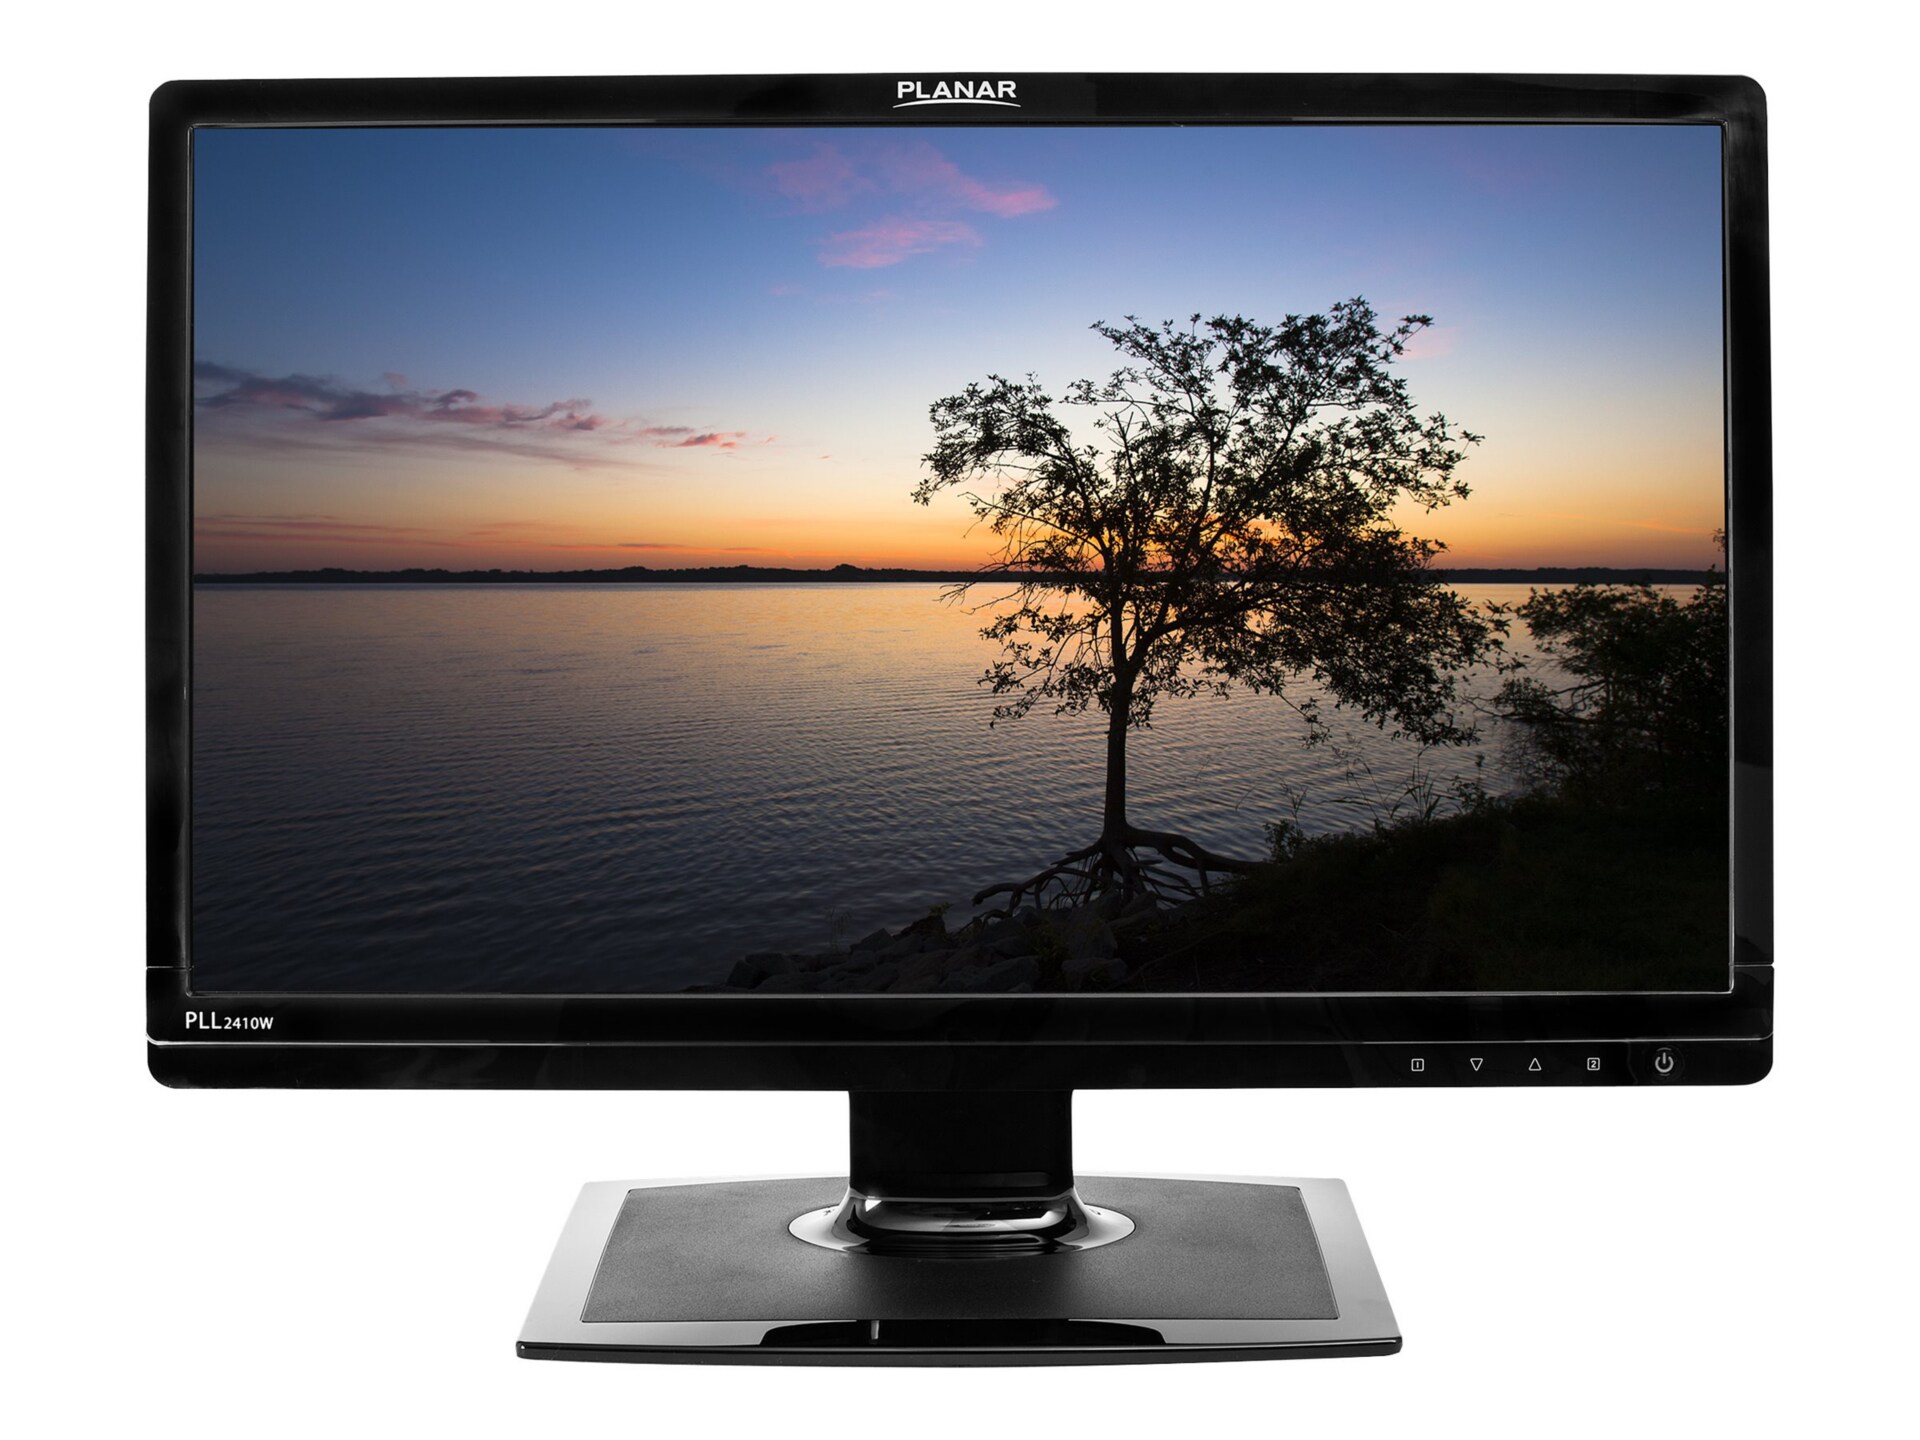 Planar PLL2410W - LED monitor - Full HD (1080p) - 24" - with 3-Years Warranty Planar Customer First